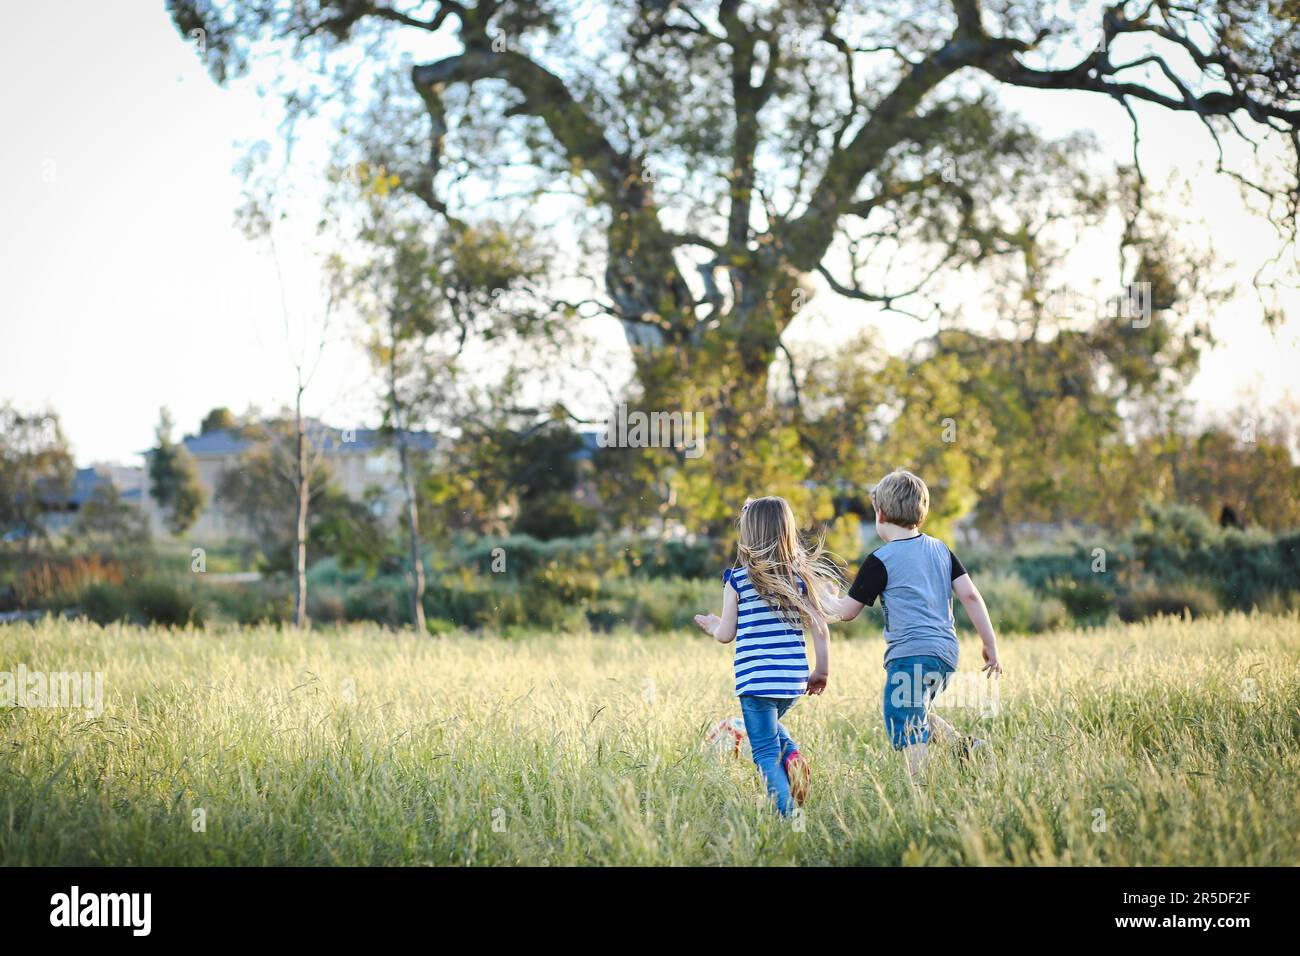 Junge und Mädchen Rennen durch langes Gras und spielen Fußball im Park. Australische Kinder haben Spaß im Freien in der Natur Stockfoto